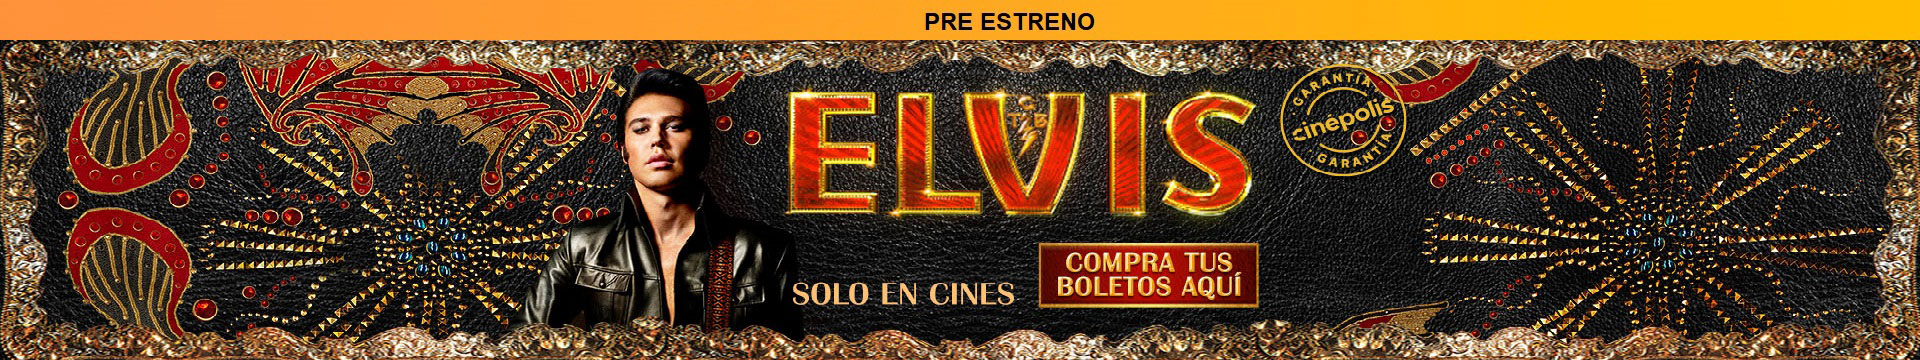 Pre-estreno Elvis